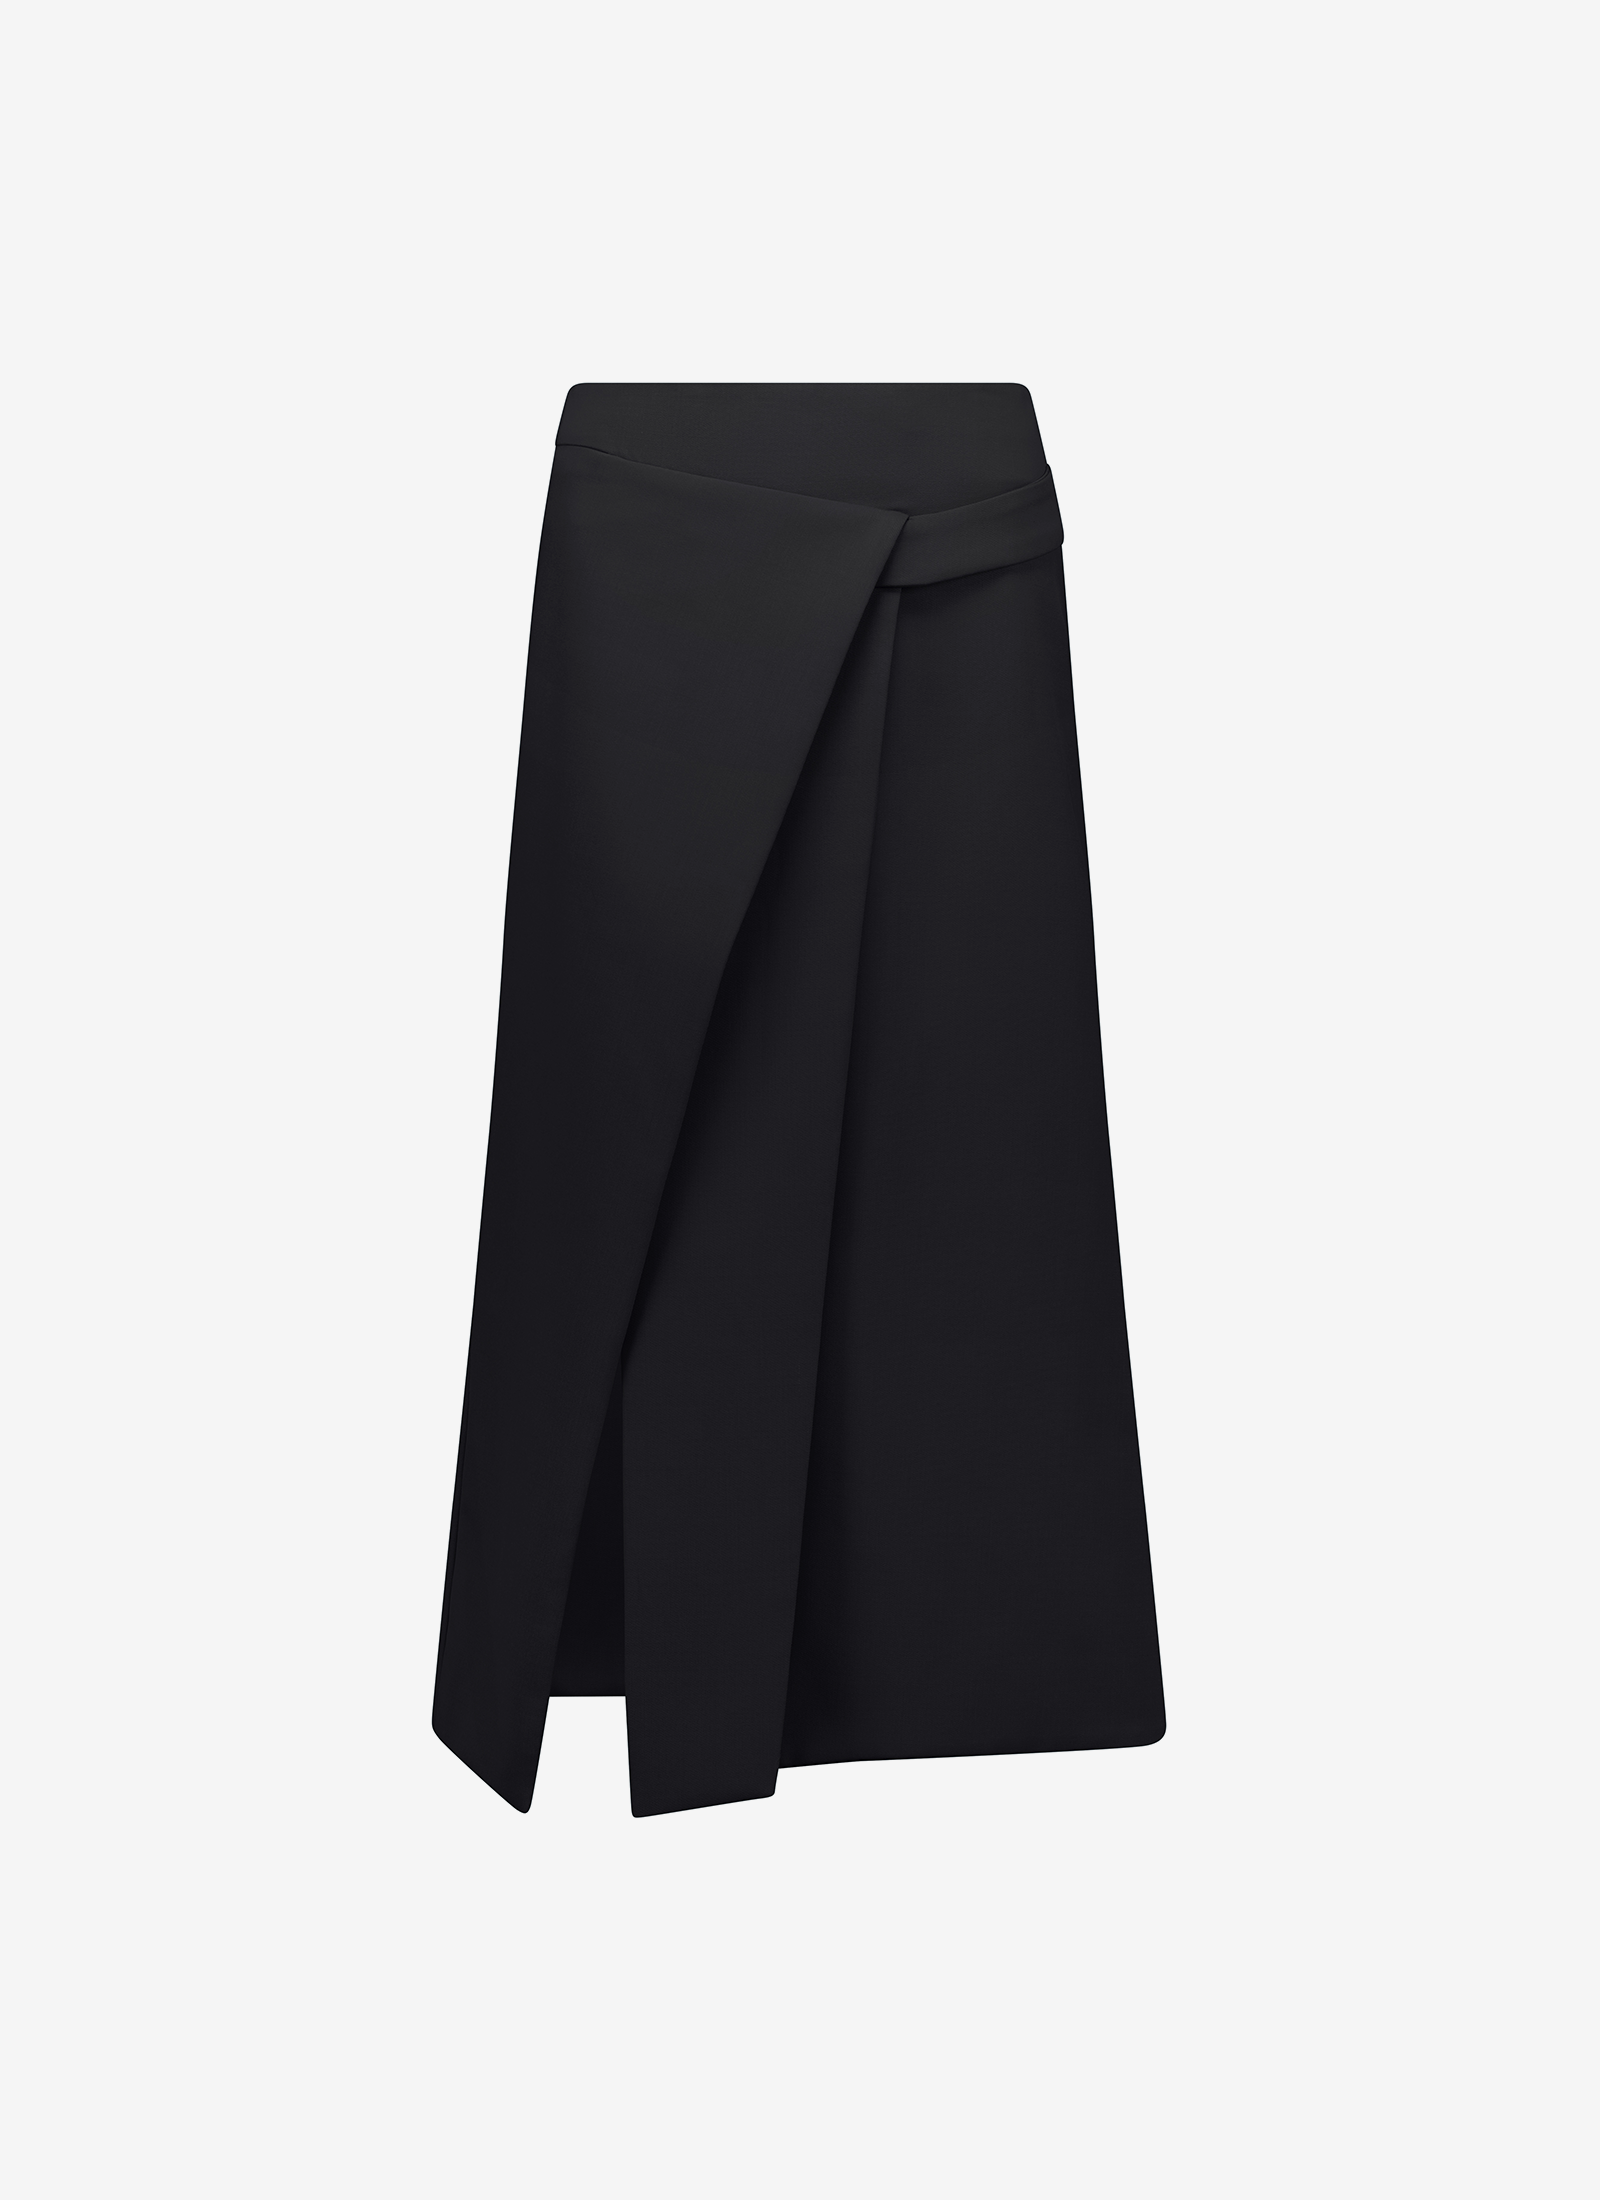 Gita Skirt in Black